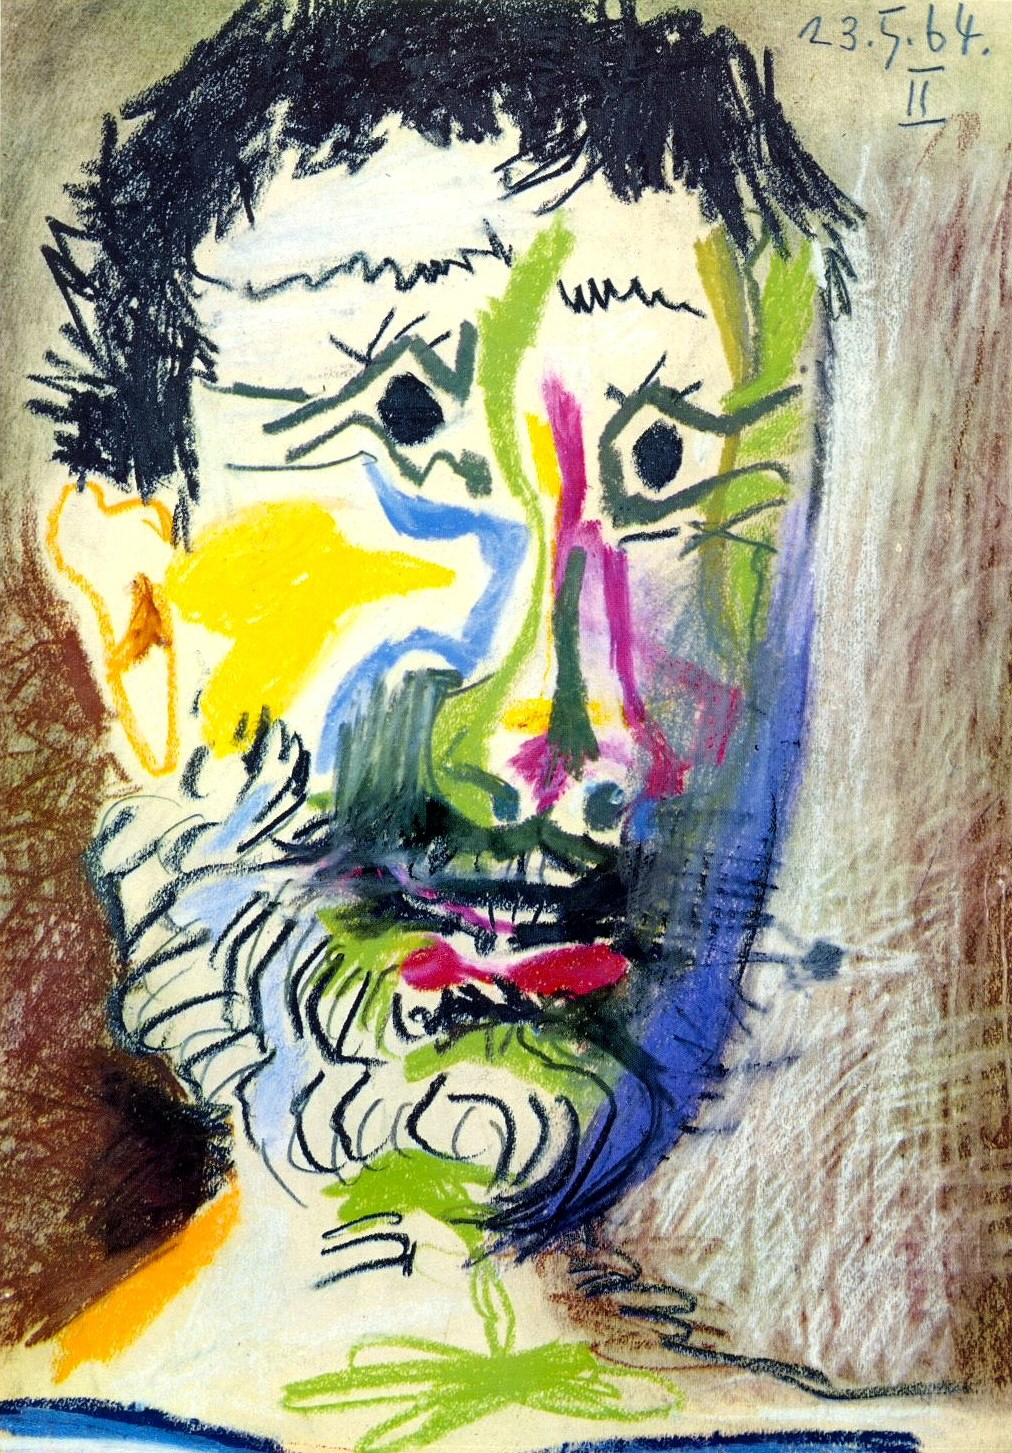 Пабло Пикассо. "Голова бородатого мужчины с сигаретой". 13.05.1964.